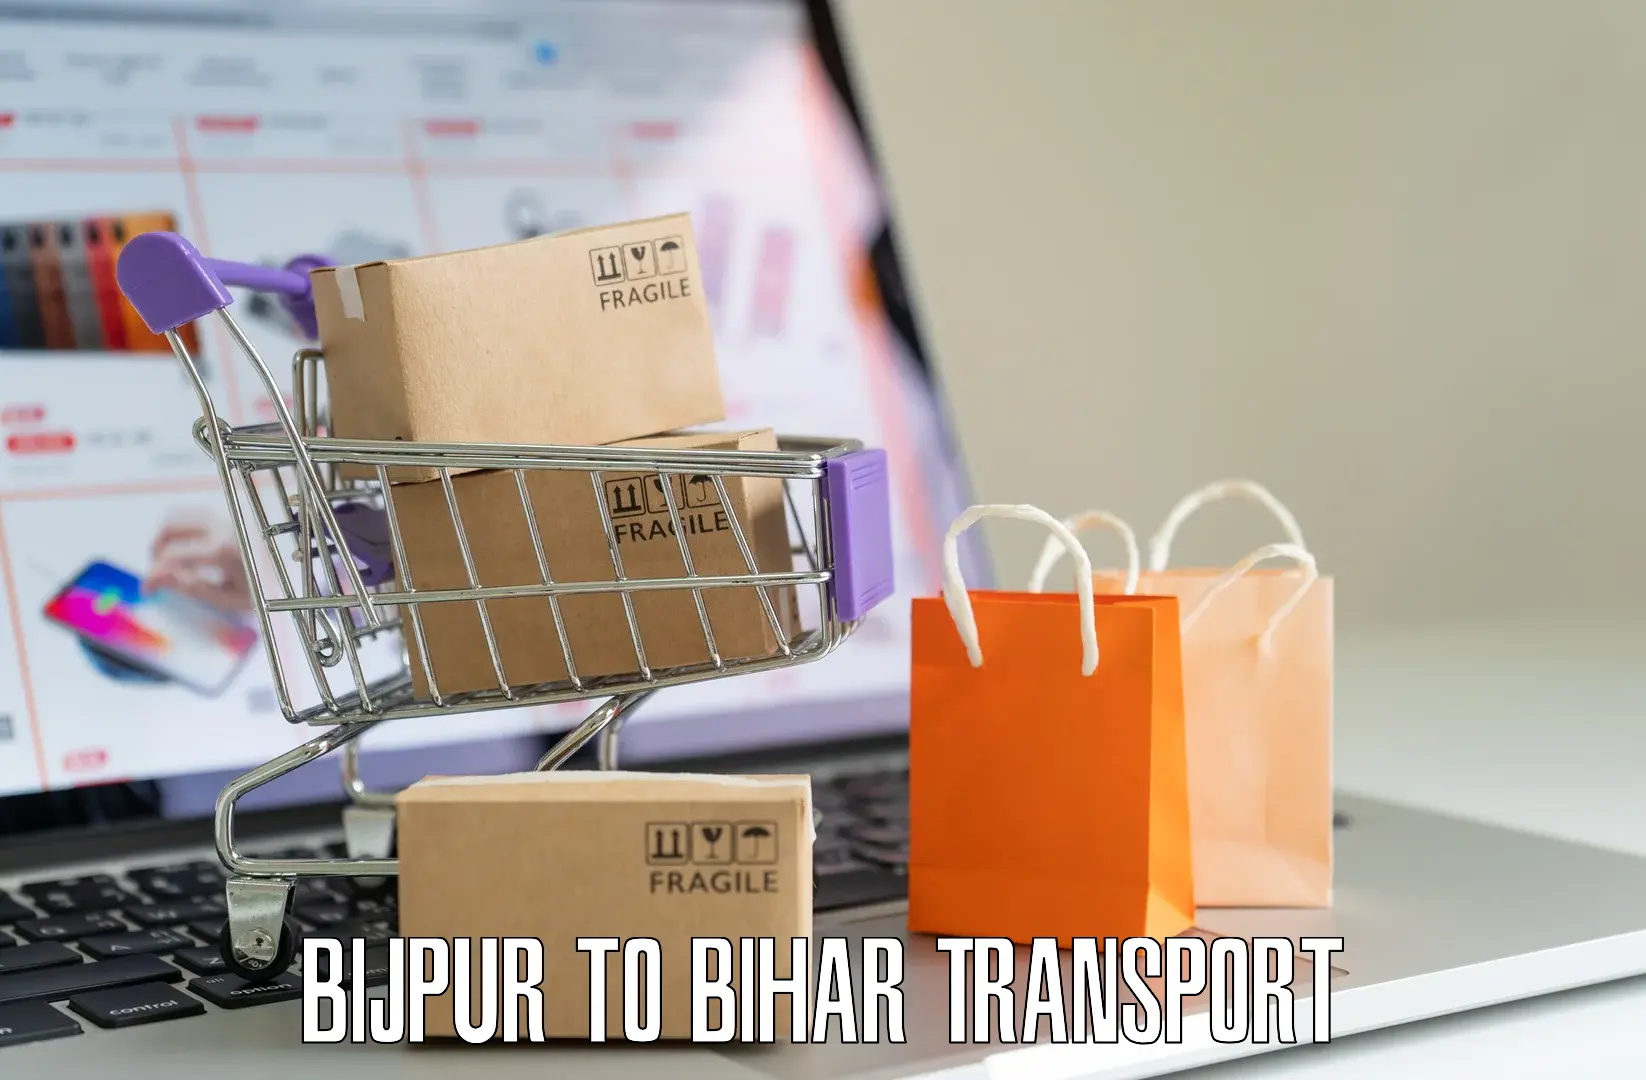 Door to door transport services Bijpur to Tekari